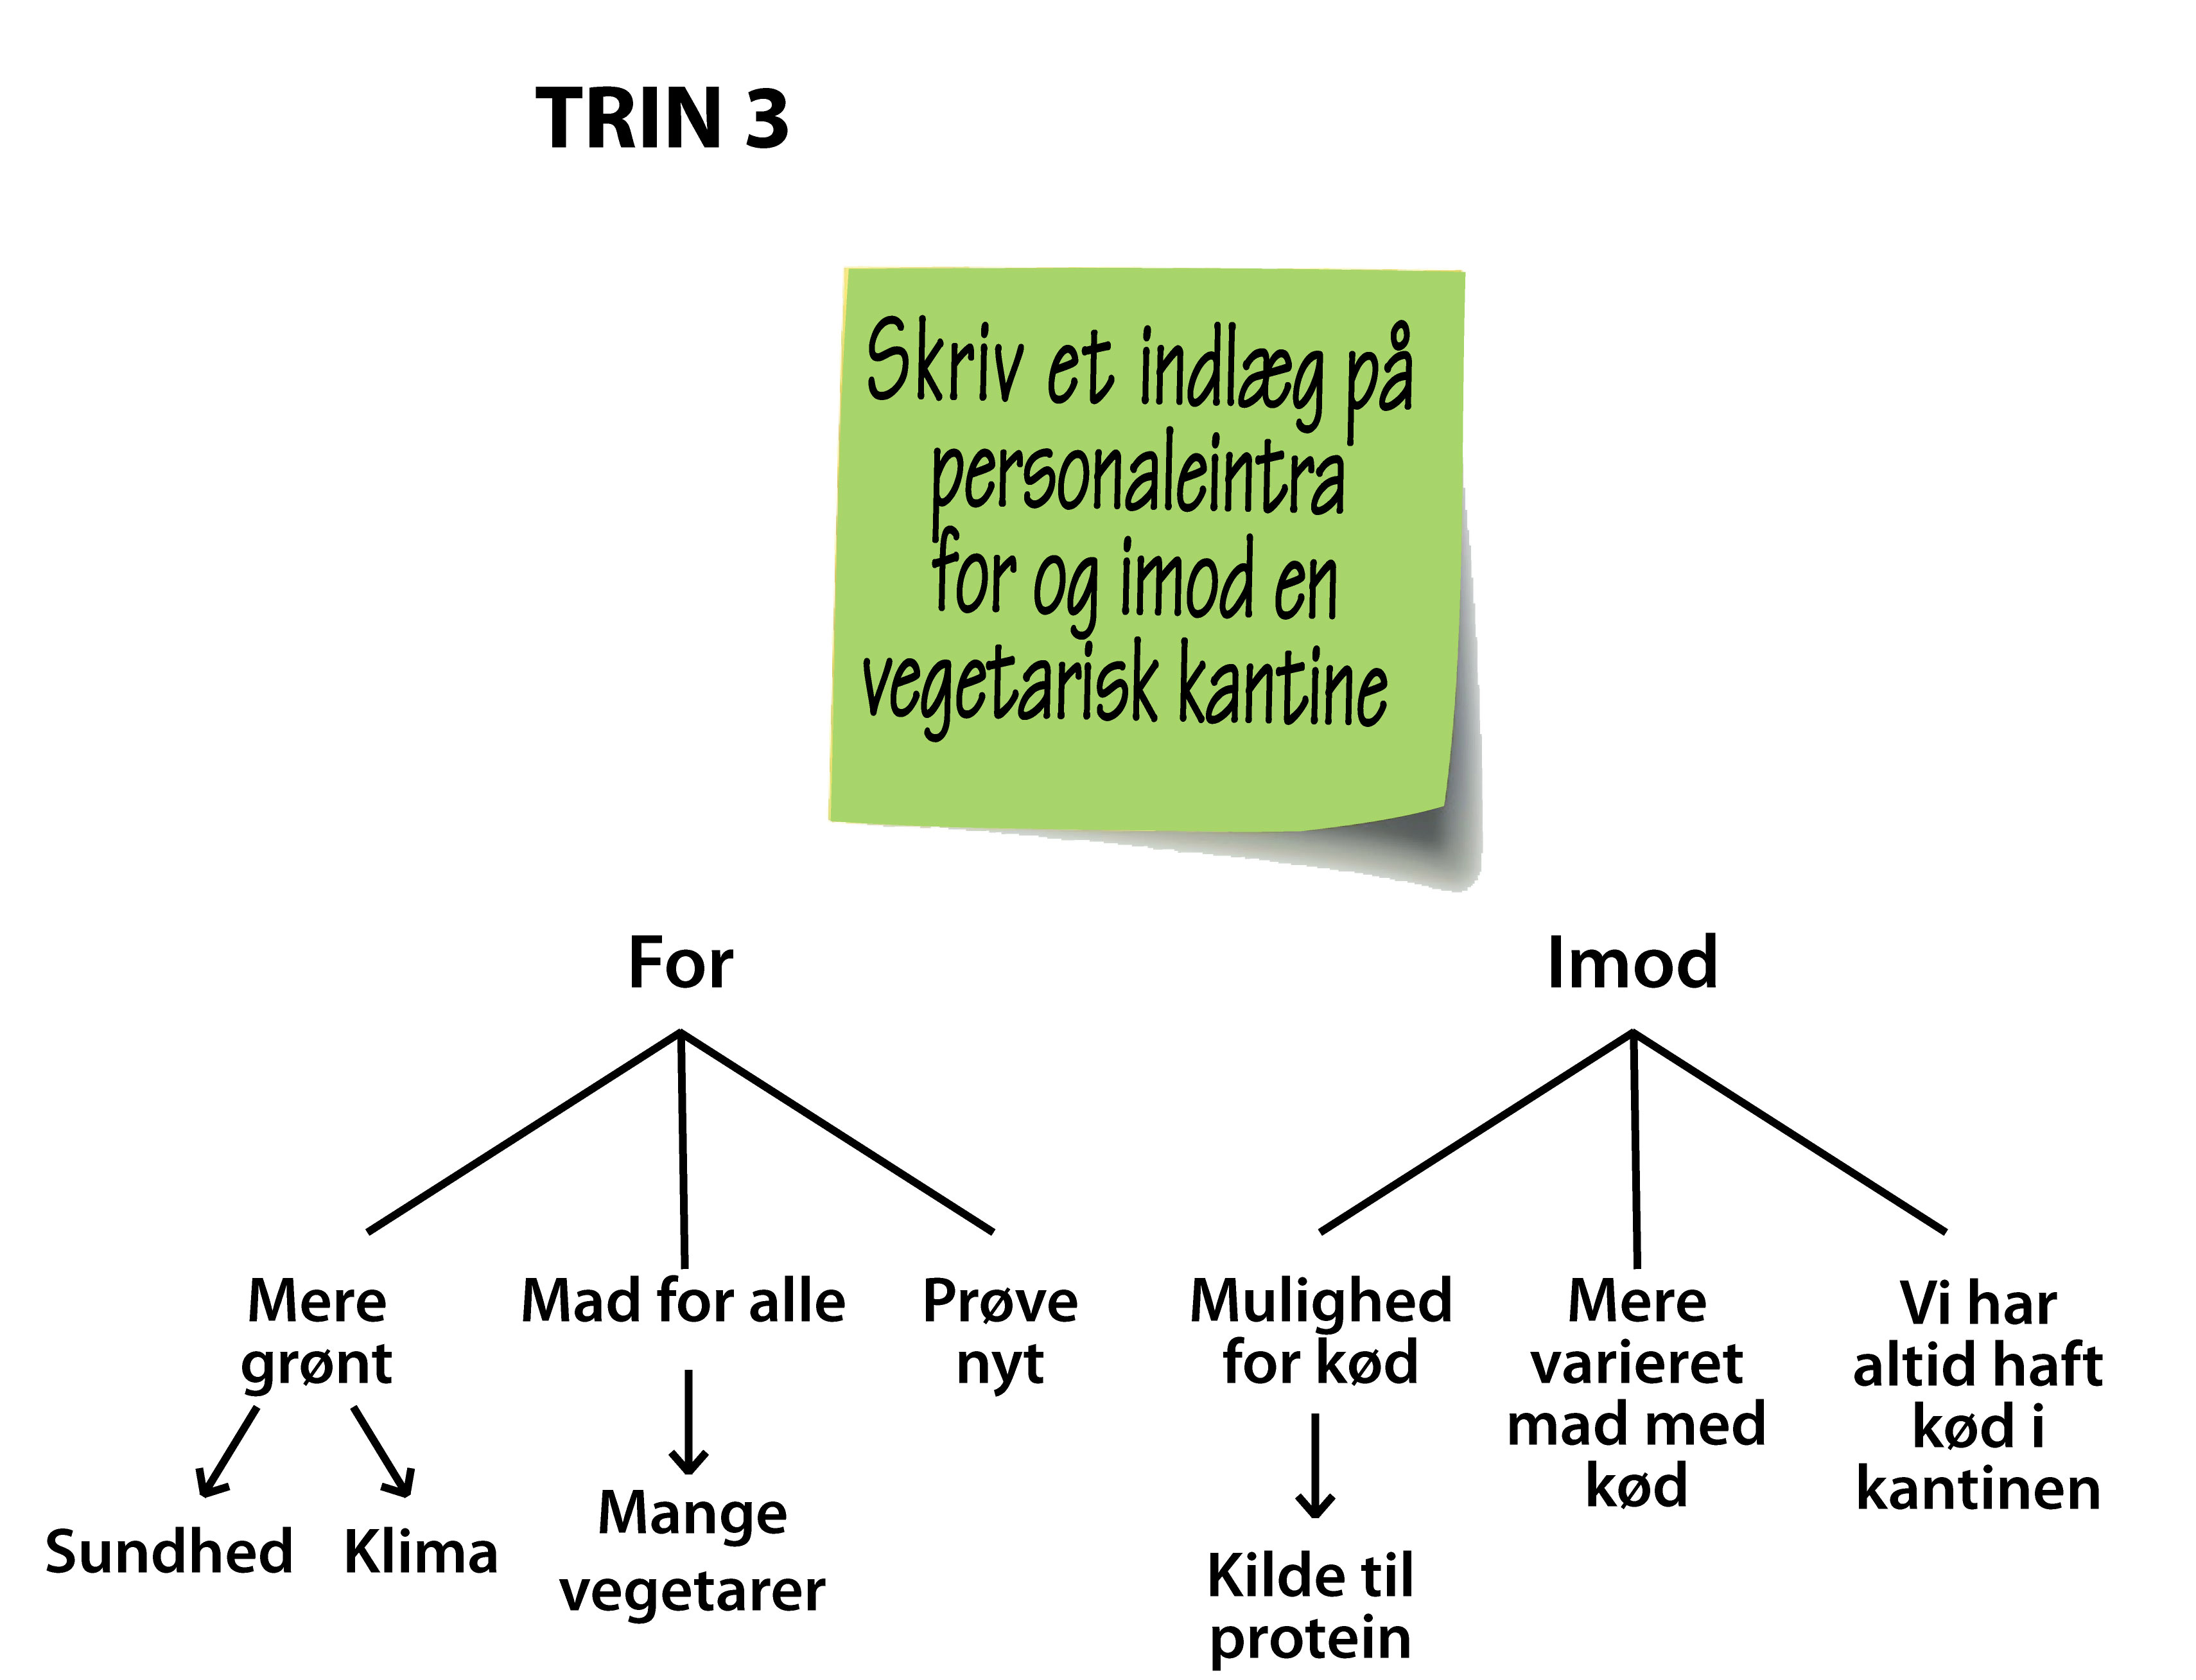 Trin 3